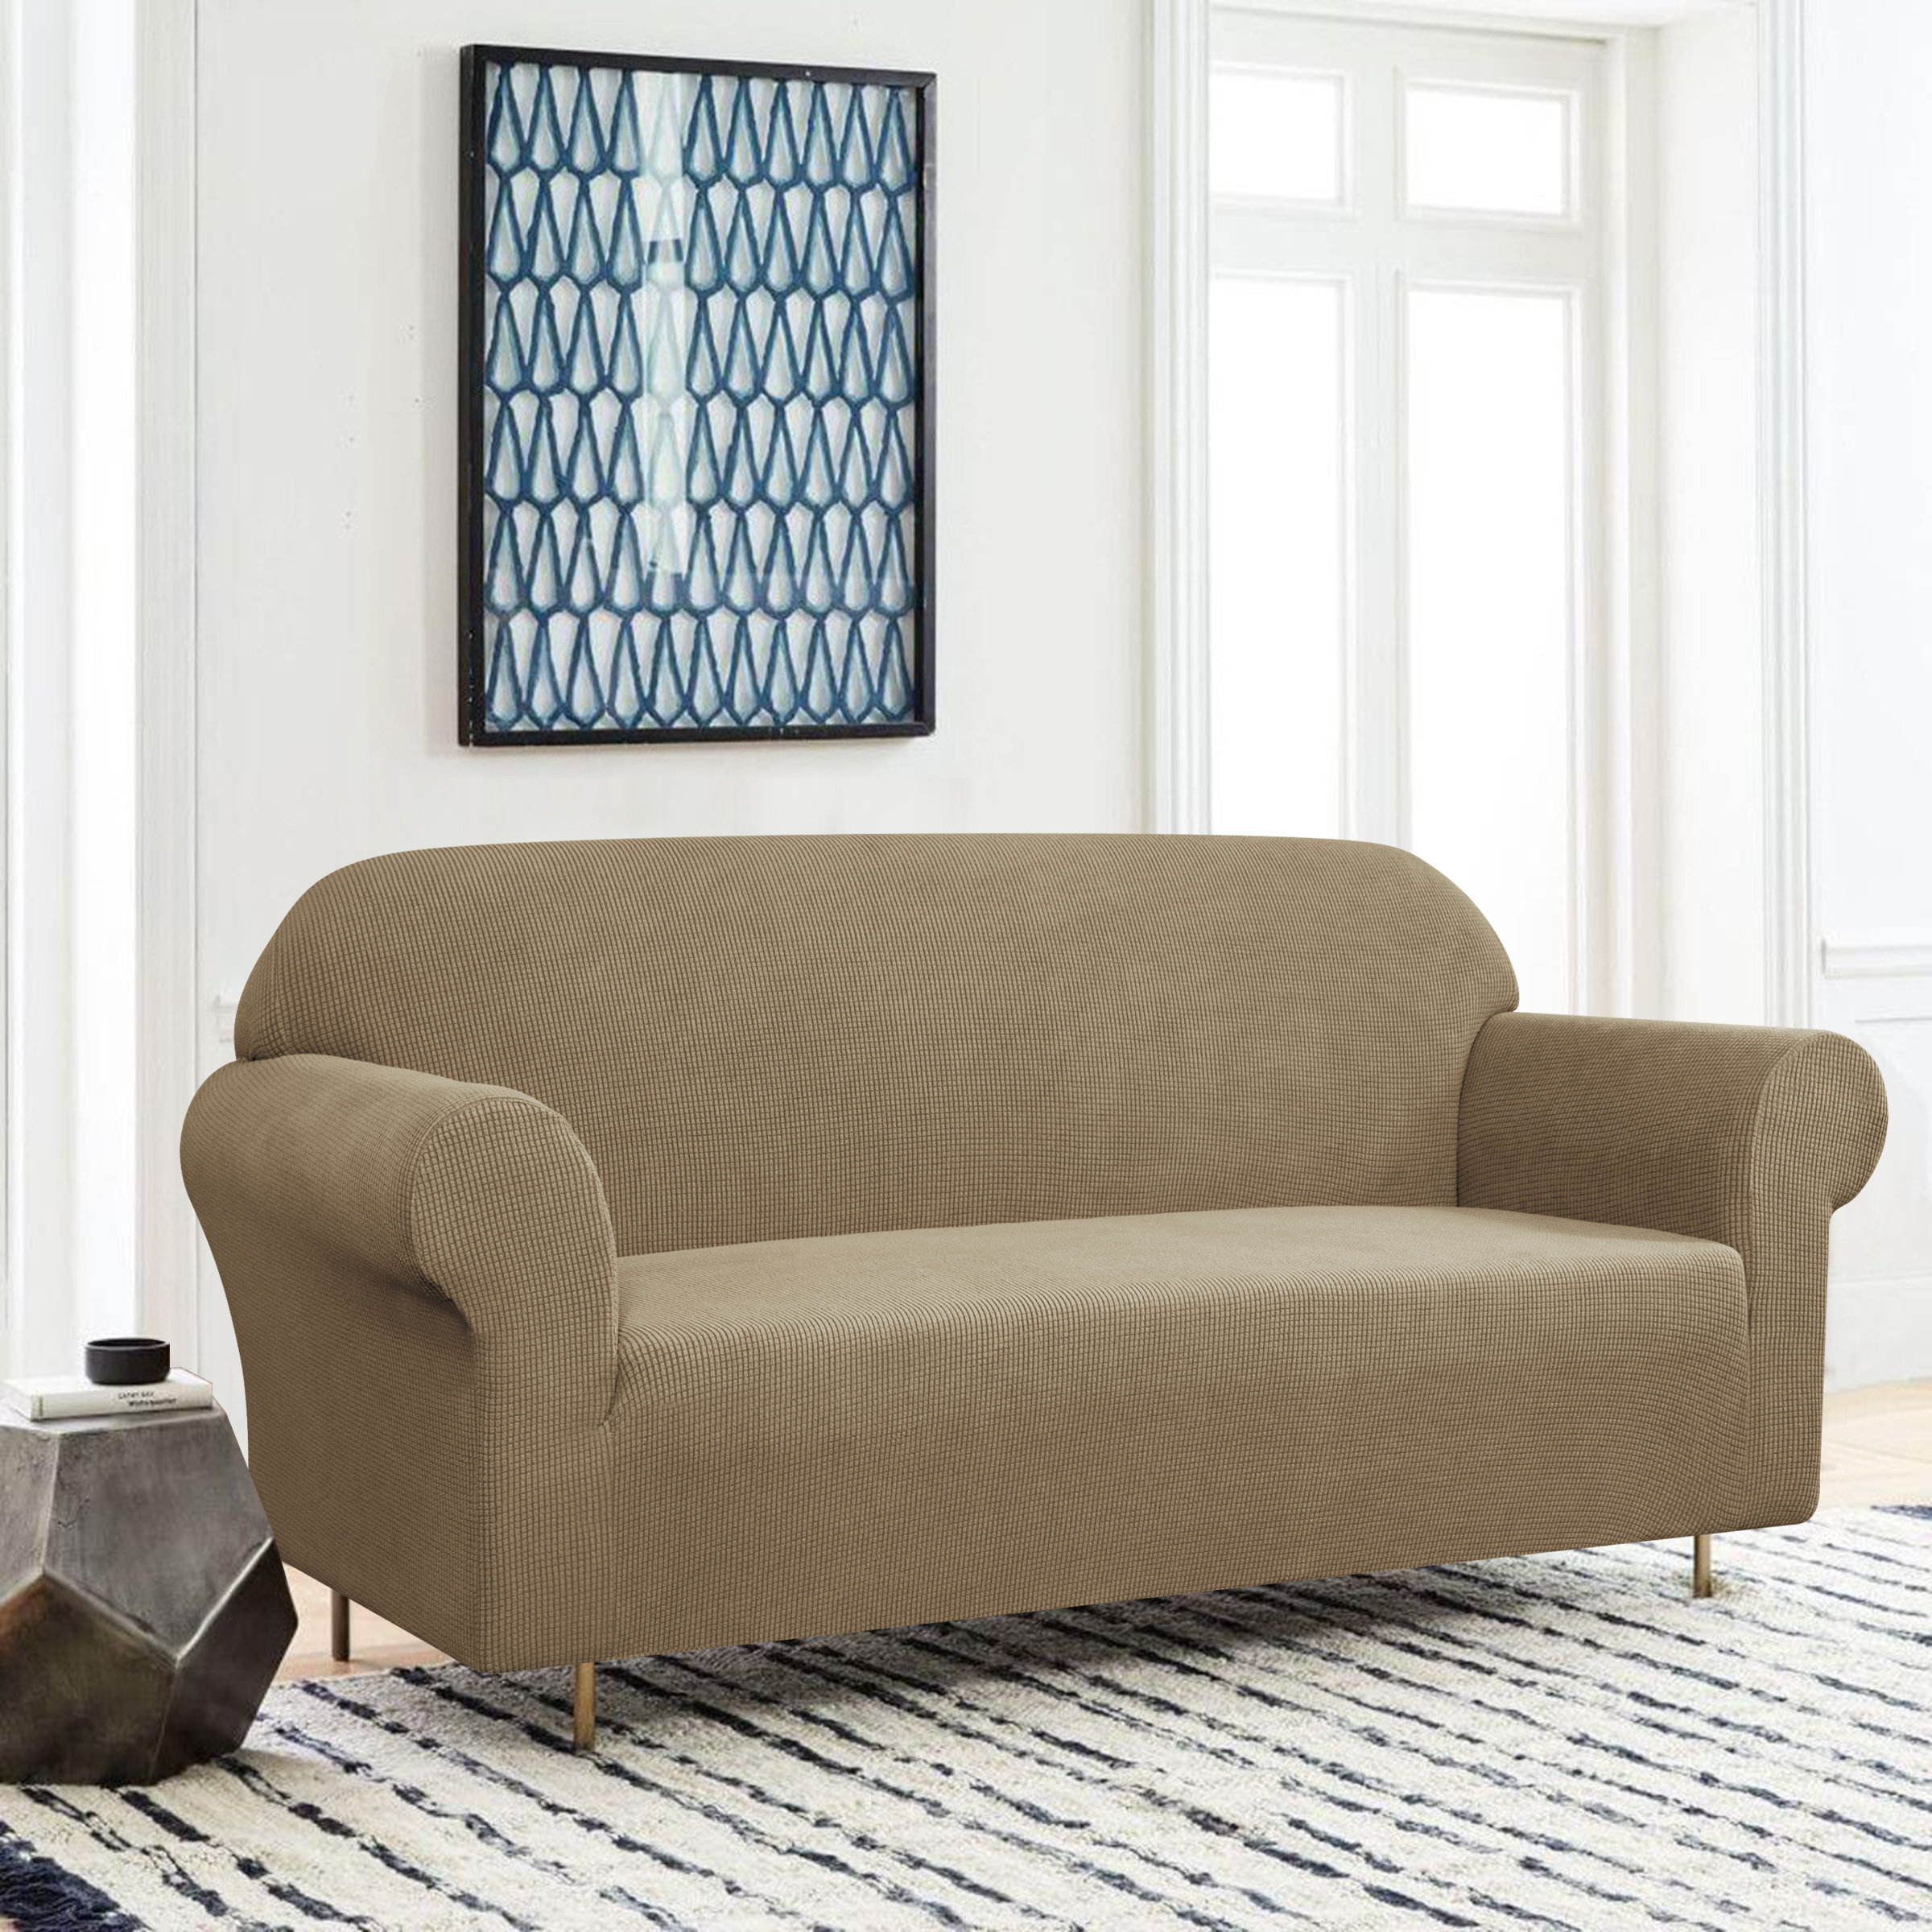 https://assets.wfcdn.com/im/23548375/compr-r85/2019/201907039/dlerfeut-box-cushion-sofa-slipcover.jpg